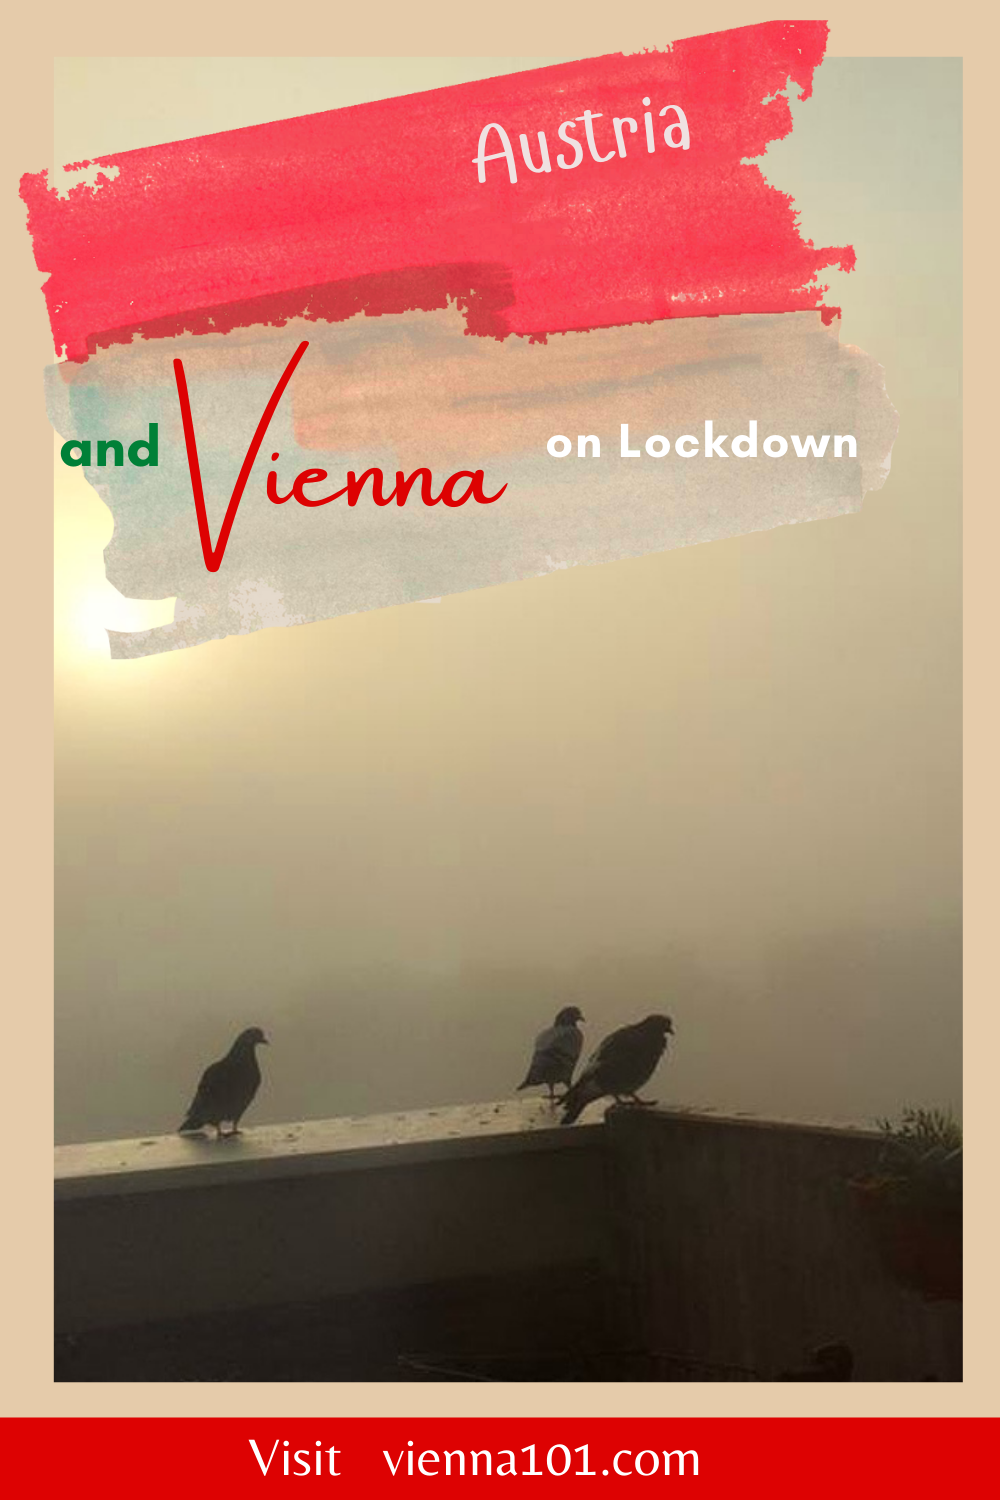 Austria Lockdown November 22